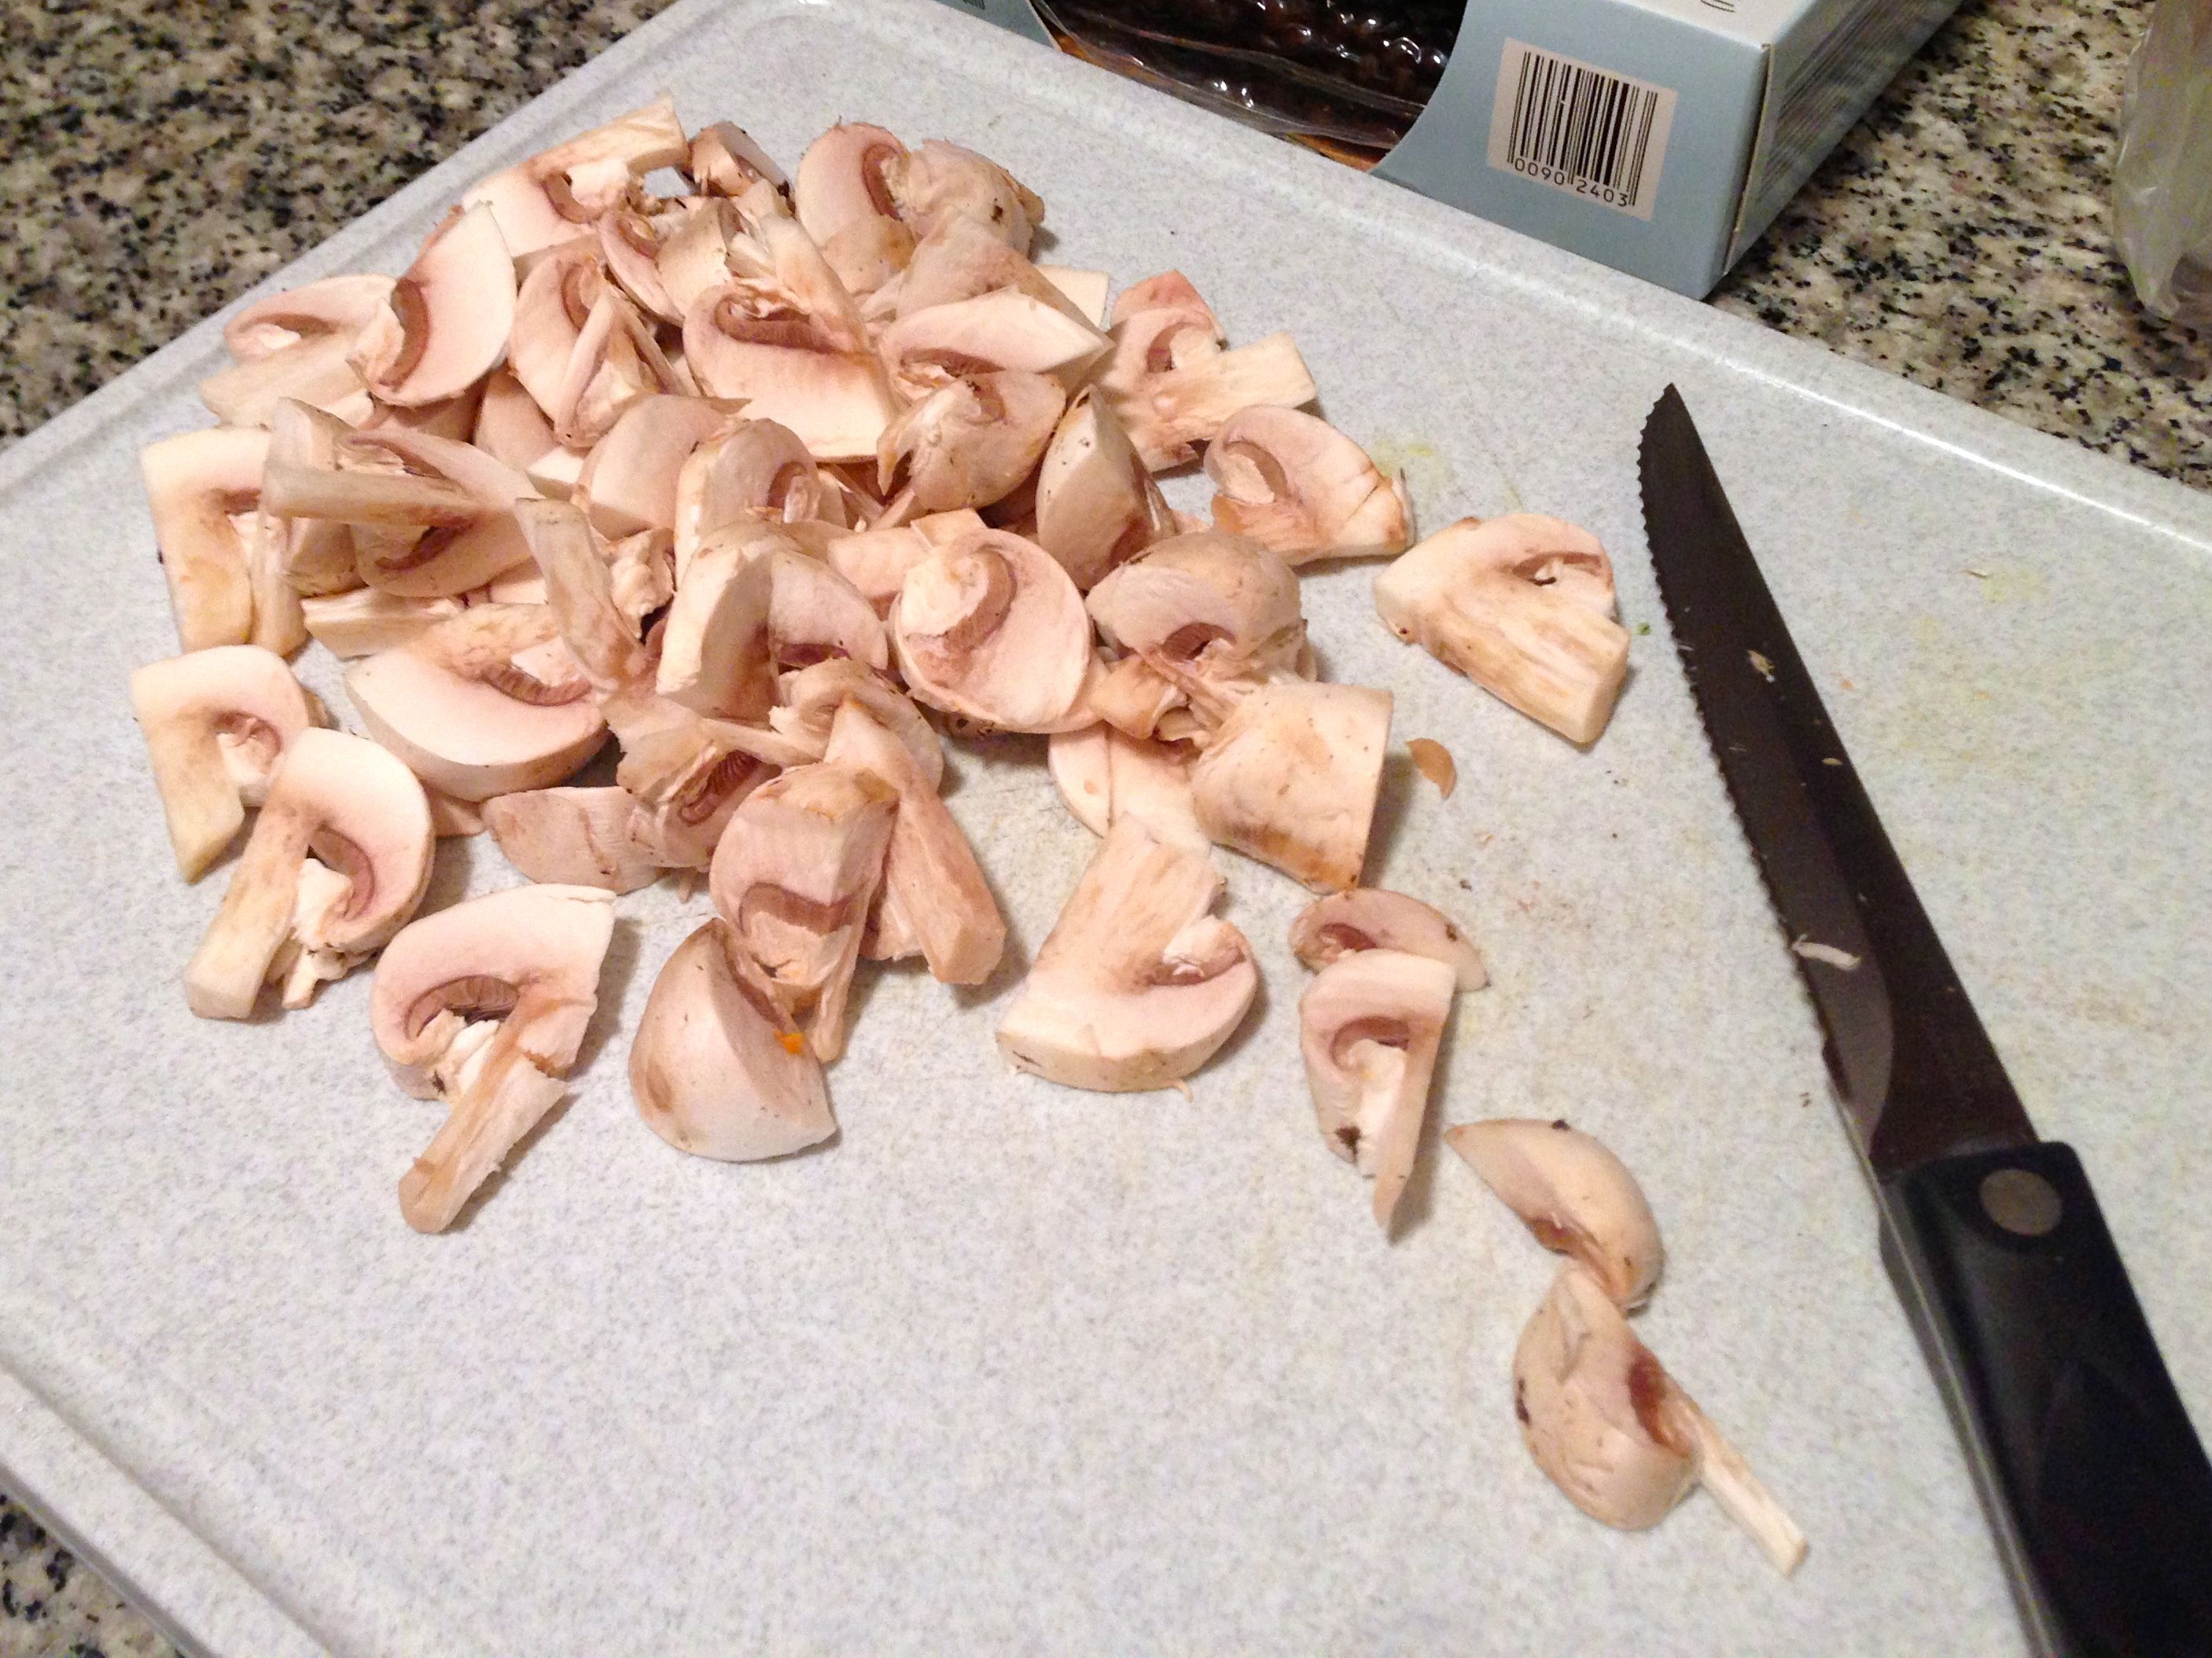 cut mushrooms w:knife